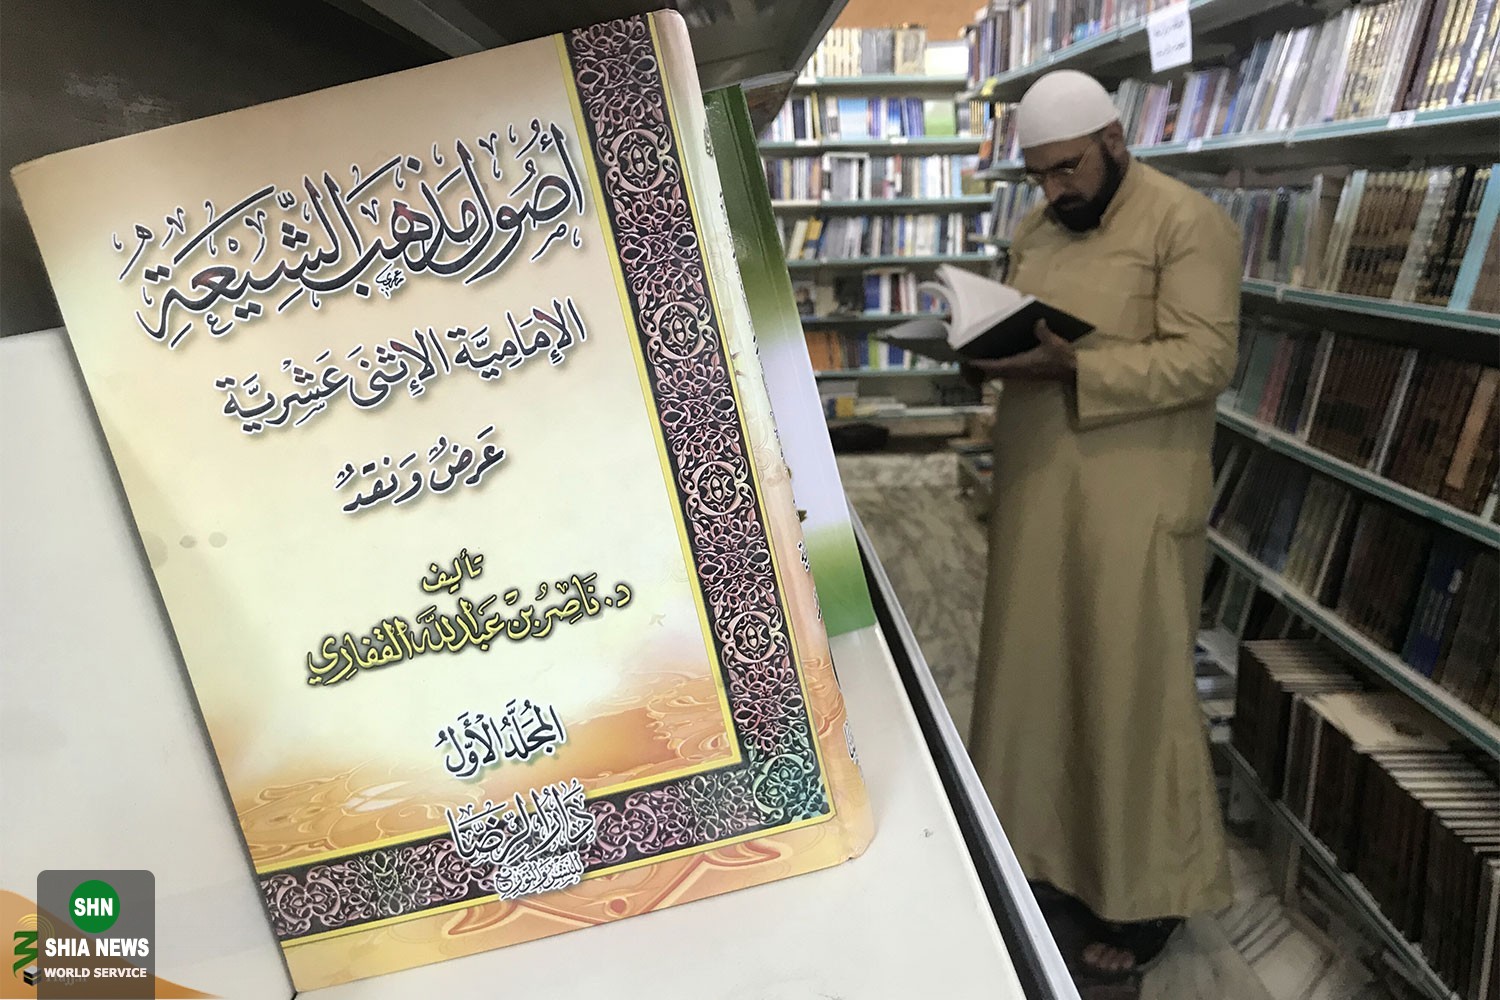 کتابفروشی های عربستان محلی برای نشر کتابهایی علیه ایران و مذهب تشیع